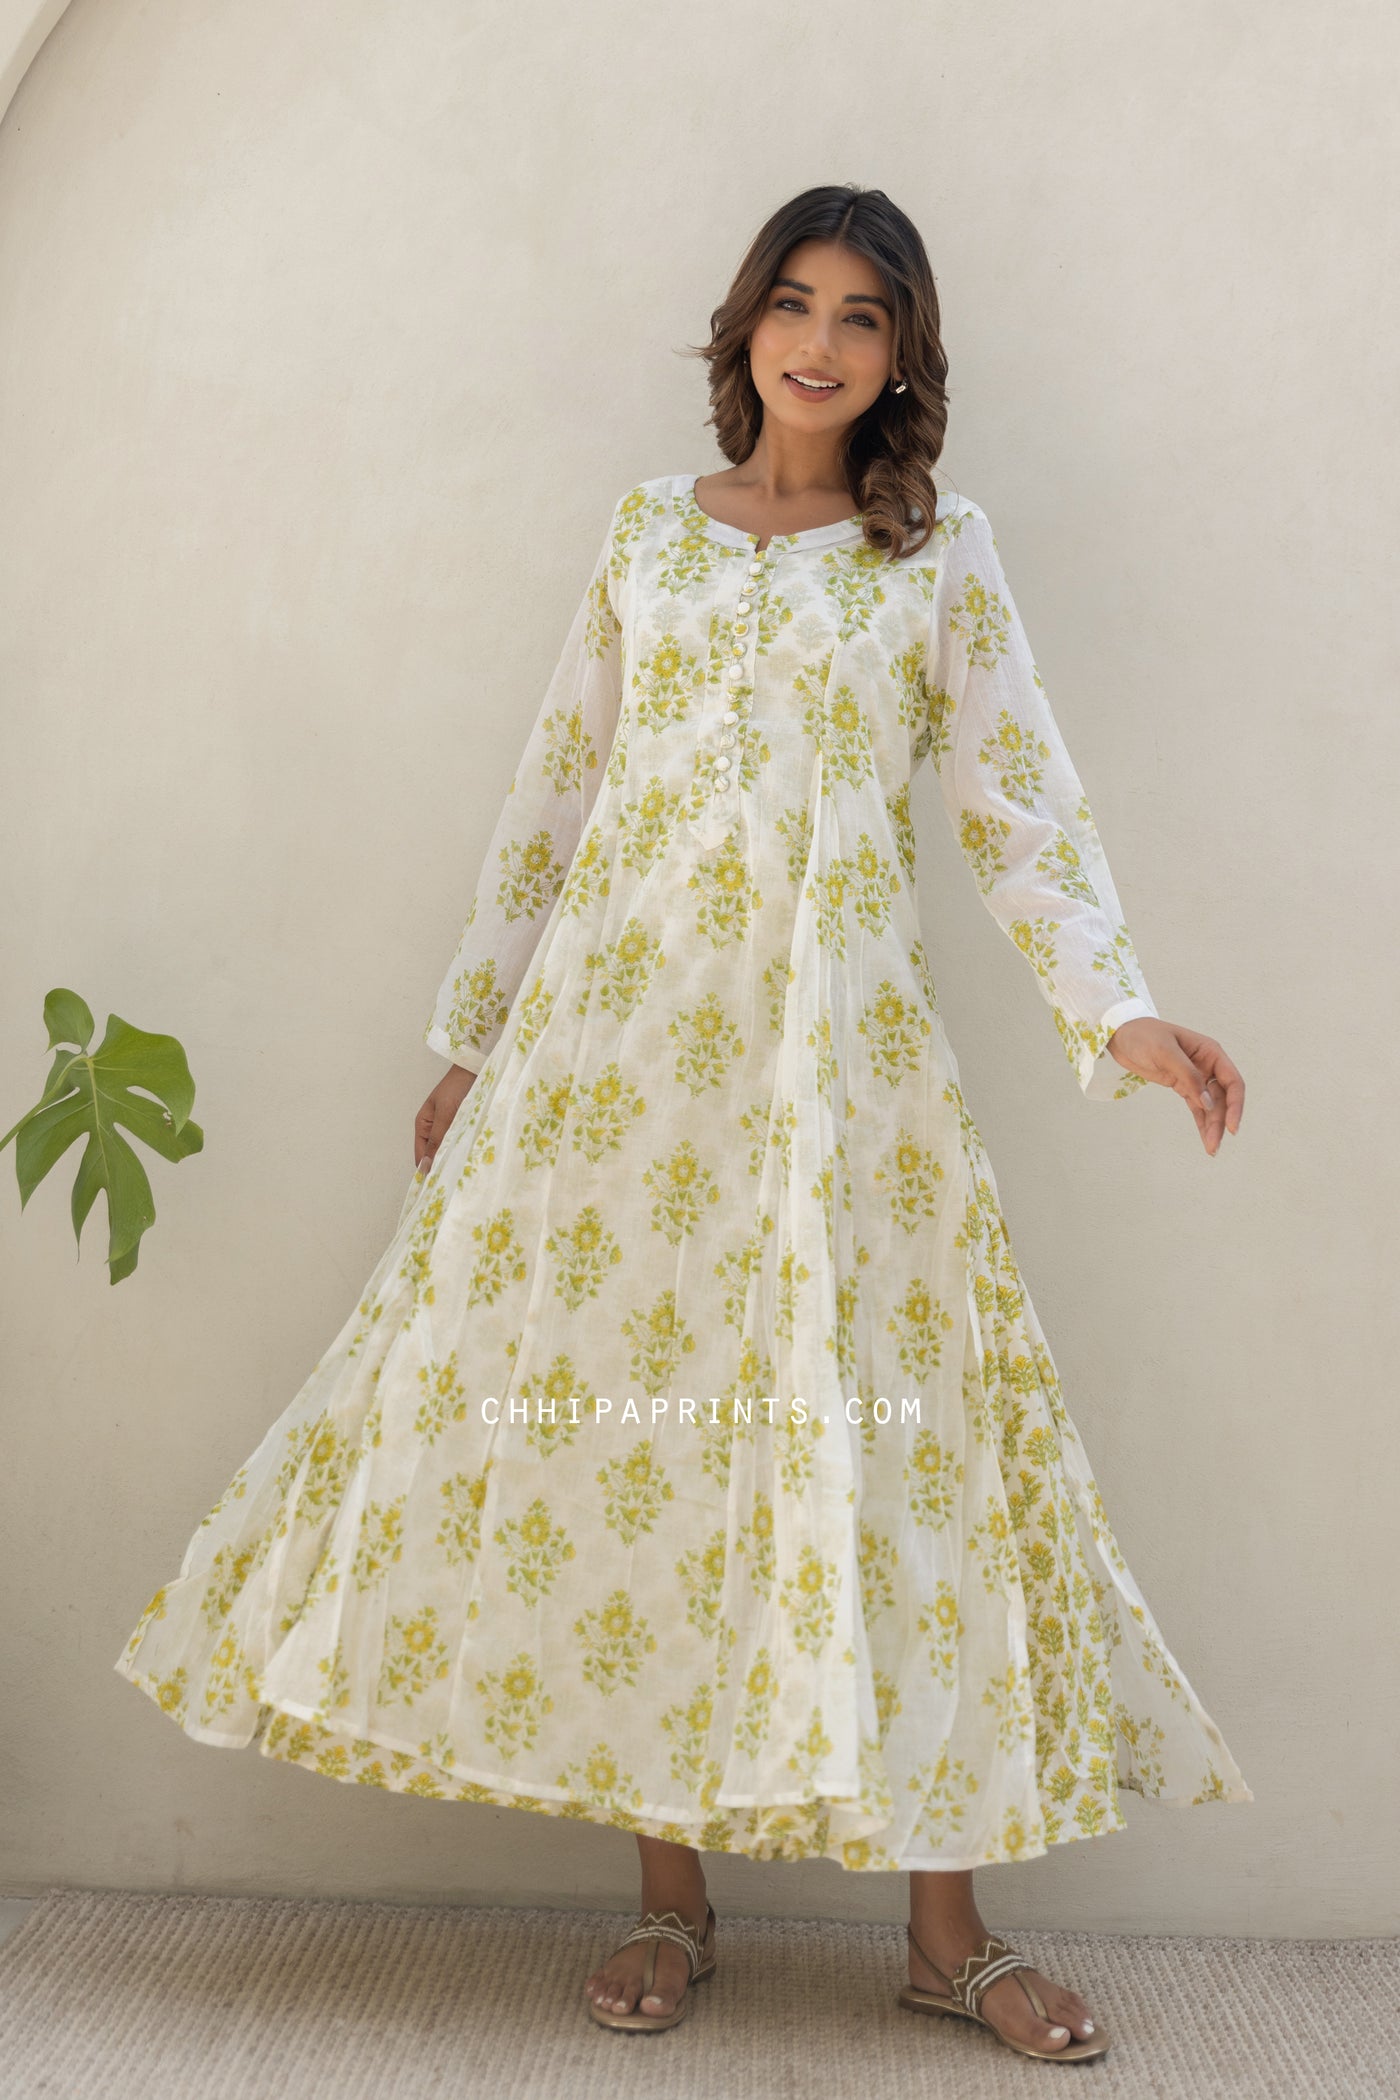 Cotton Mahin Buti Kalidar Maxi Dress in Shades of Lime Green